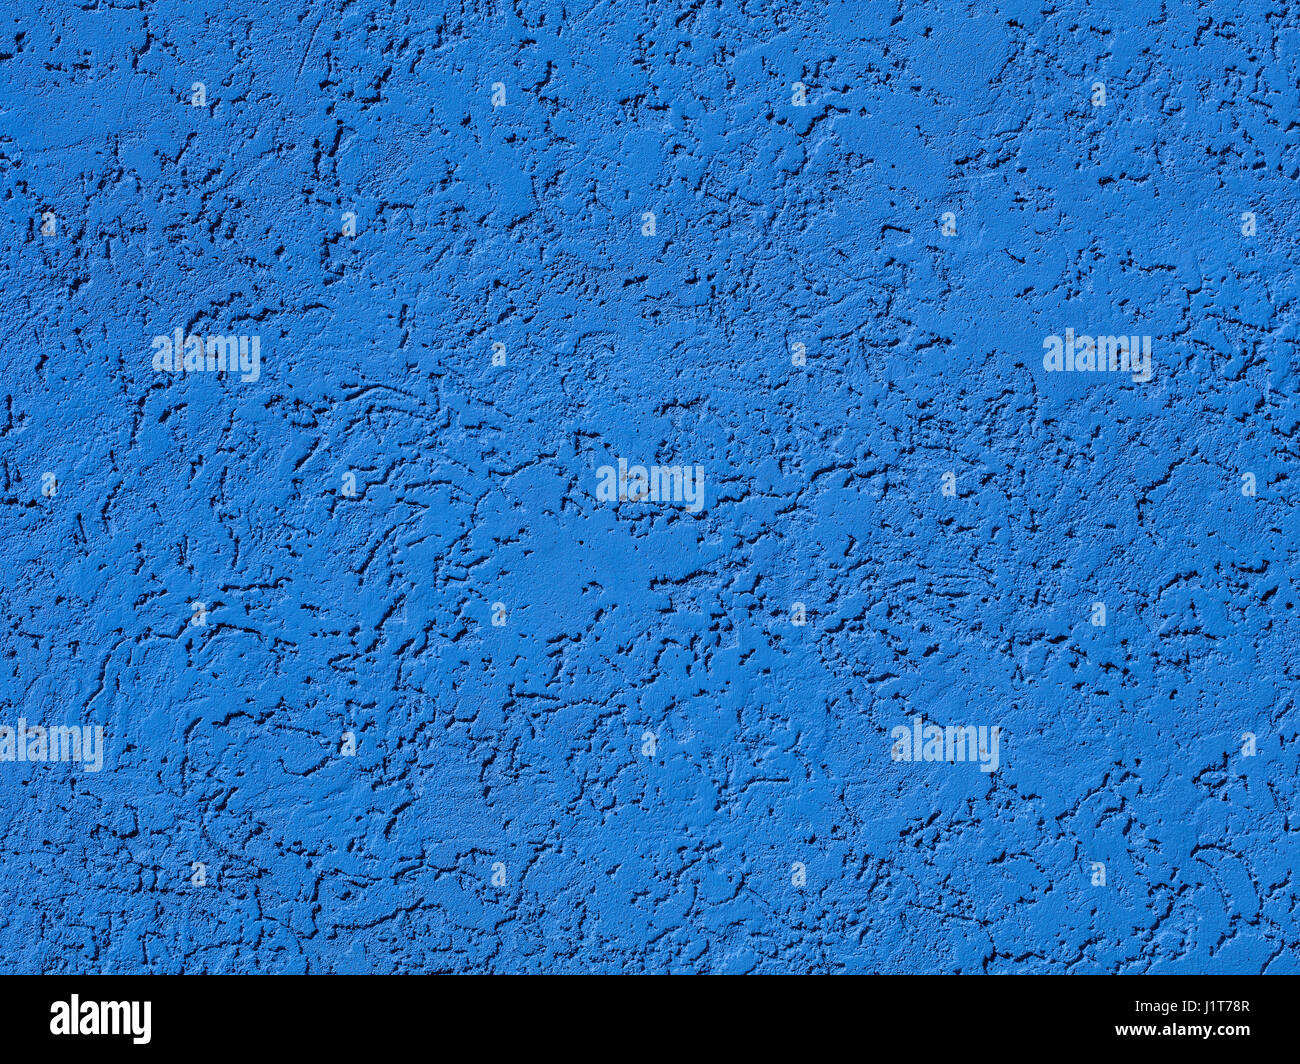 Blue darken wall texture grunge background Stock Photo